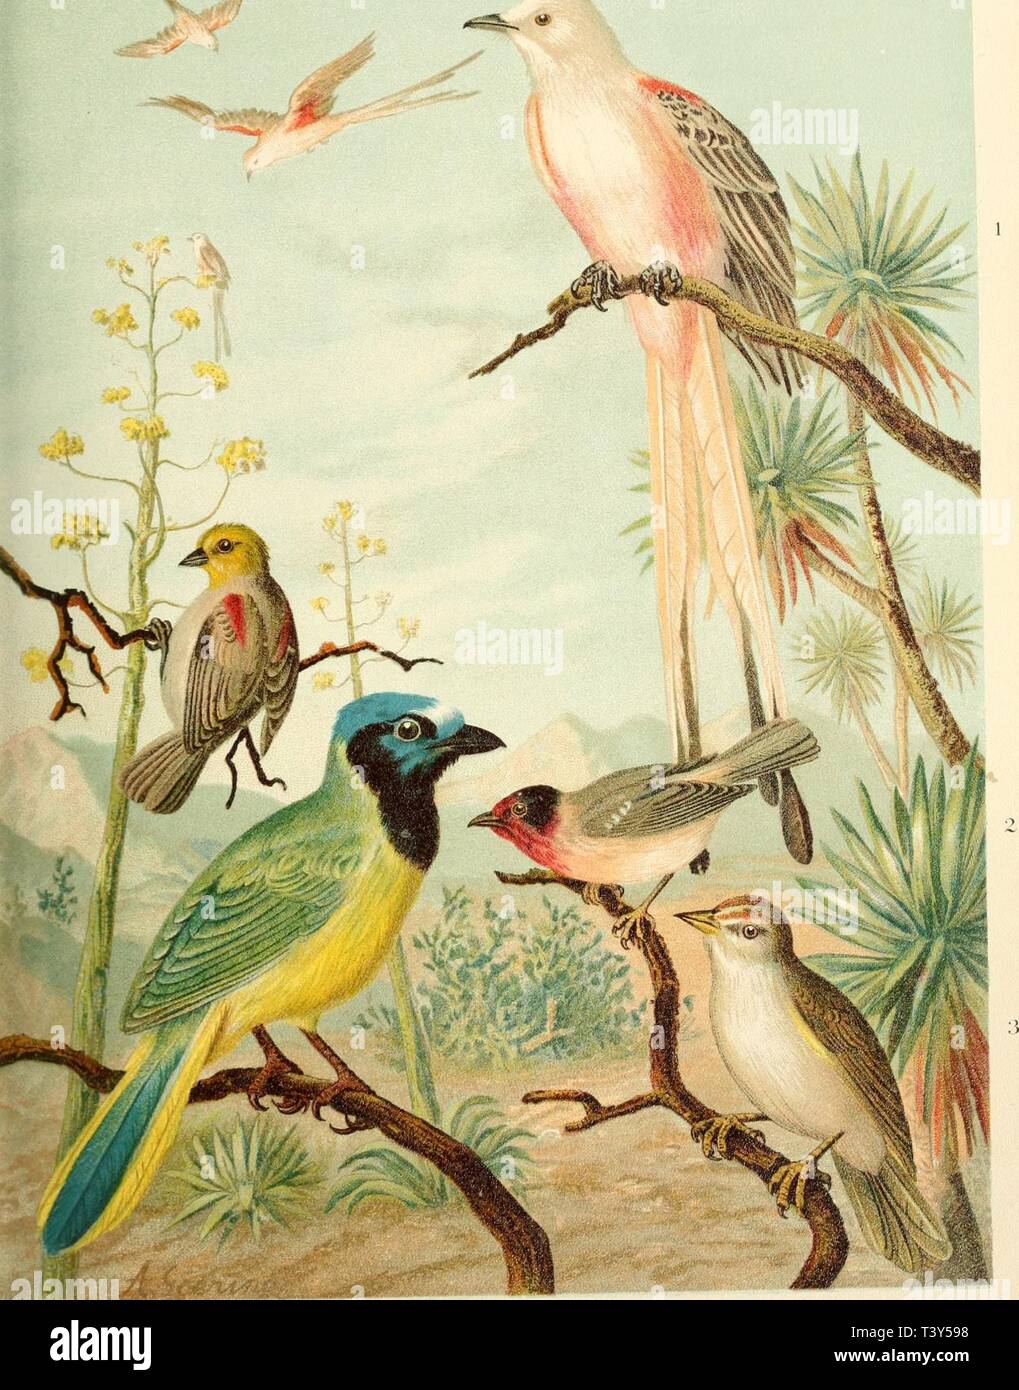 Archiv Bild ab Seite 316 von Die Nord-Amerikanische Vogelwelt (1889). Nord-Amerikanische Vogelwelt dienordamerikani 10 nehr sterben jedes Jahr: 1889 ICH ICH MIIATLrS OlinCATUS Swams. Â 1. CARDKMJXA RUBRIFRÃ¼NS SclrU 3. KMRKHXAGRA RFKIVIKUATA l. av.' Ich - 1 -. AURIPARI. S FI. AVICKPS FTE. '). XANTHOTRA lAXlOvSA Rp. SCHEERENTYRANN. MASKENSÃNGER. TEXASFINK. GOLD M E1SE. 6 RÃN HEMER. Scissor-Schmerzte, FlycatcVier. Red-faced Warbier. Texas Sparrow VerdIn. Green Jay- Stockfoto